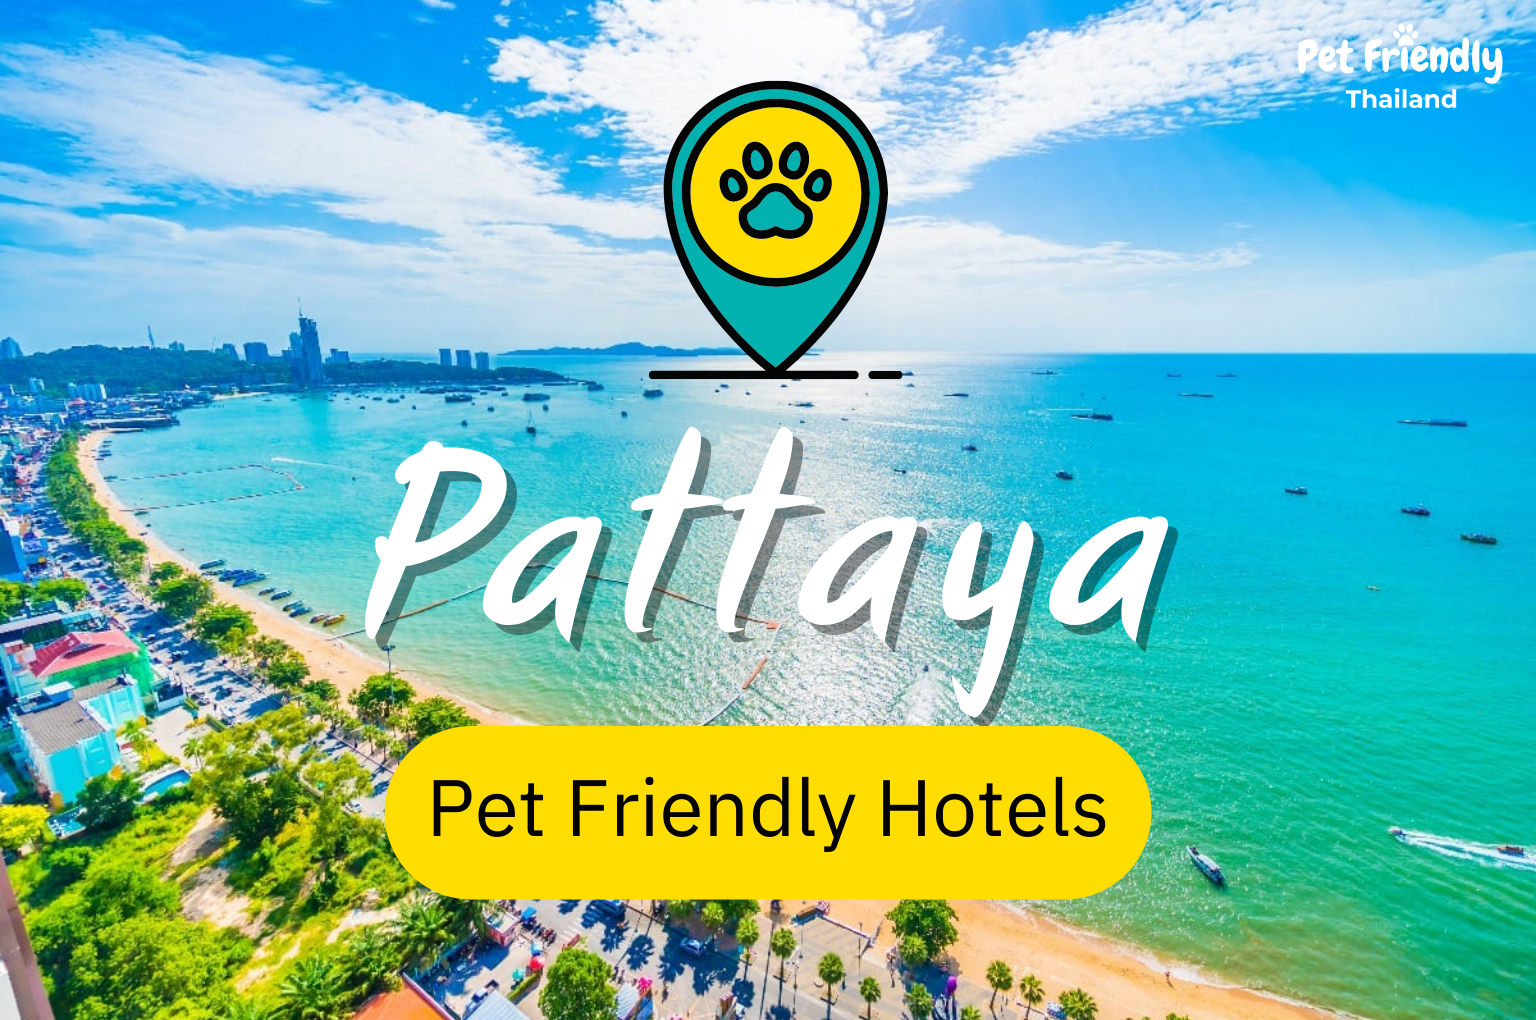 Pet Friendly Hotels in Pattaya 2022